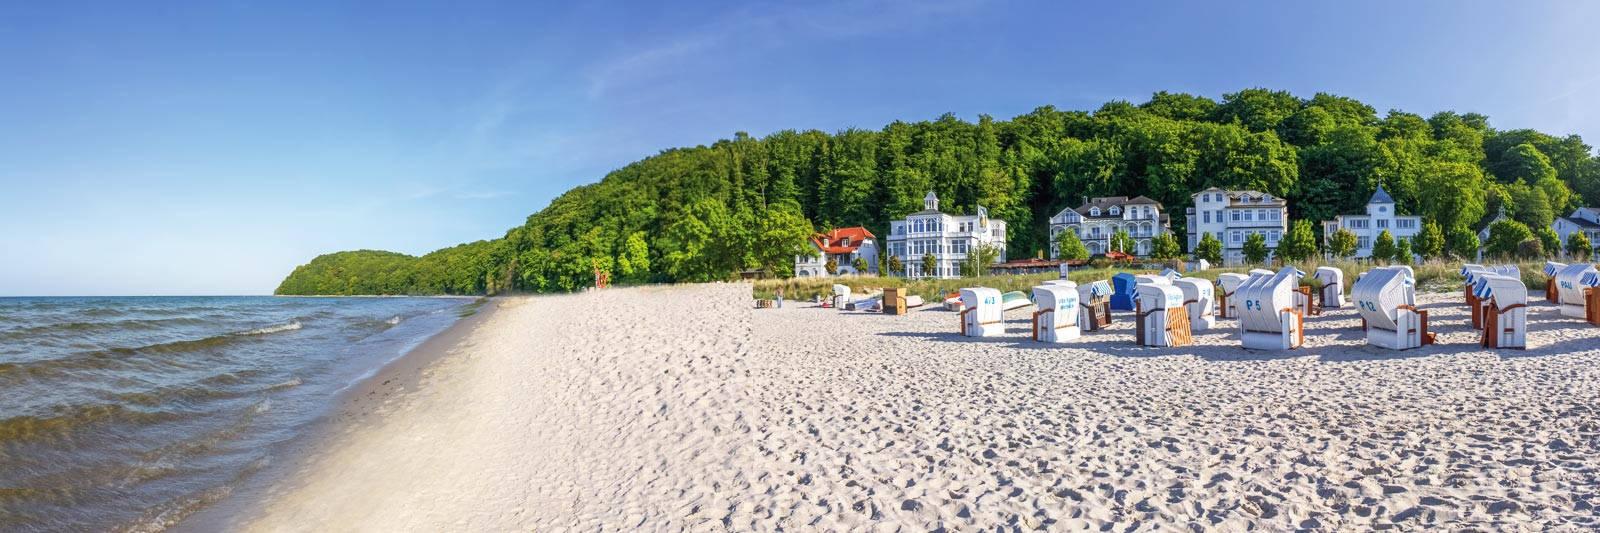 32 Ferienwohnungen und Ferienhäuser in Serrahn - tourist-online.de